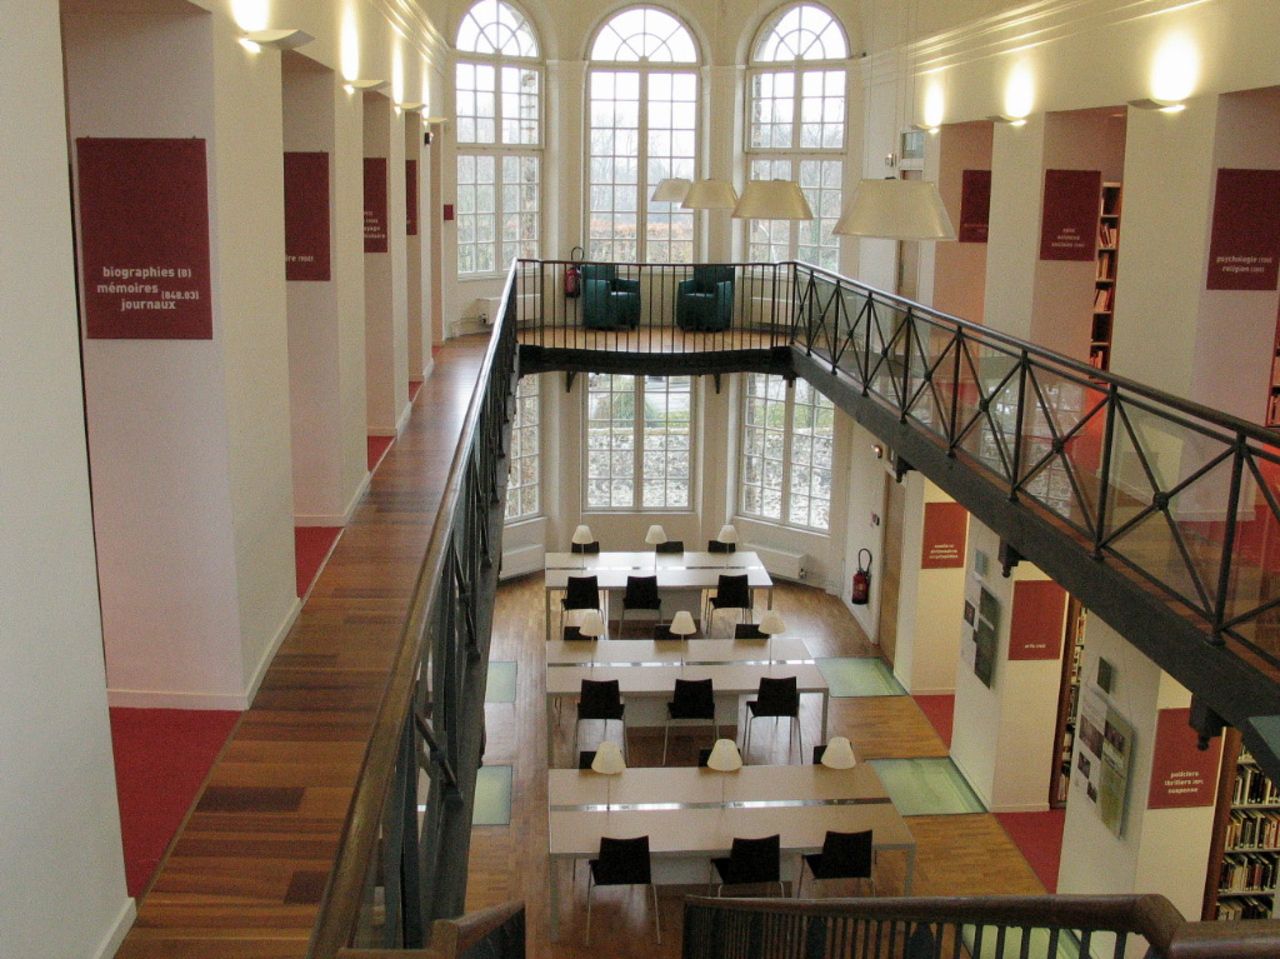 <b></b> L'ancienne prison, devenue bibliothèque en conservant les caractéristiques physiques des cellules, reçoit un prix du patrimoine. LE PARISIEN BLOND Georges MEAUX